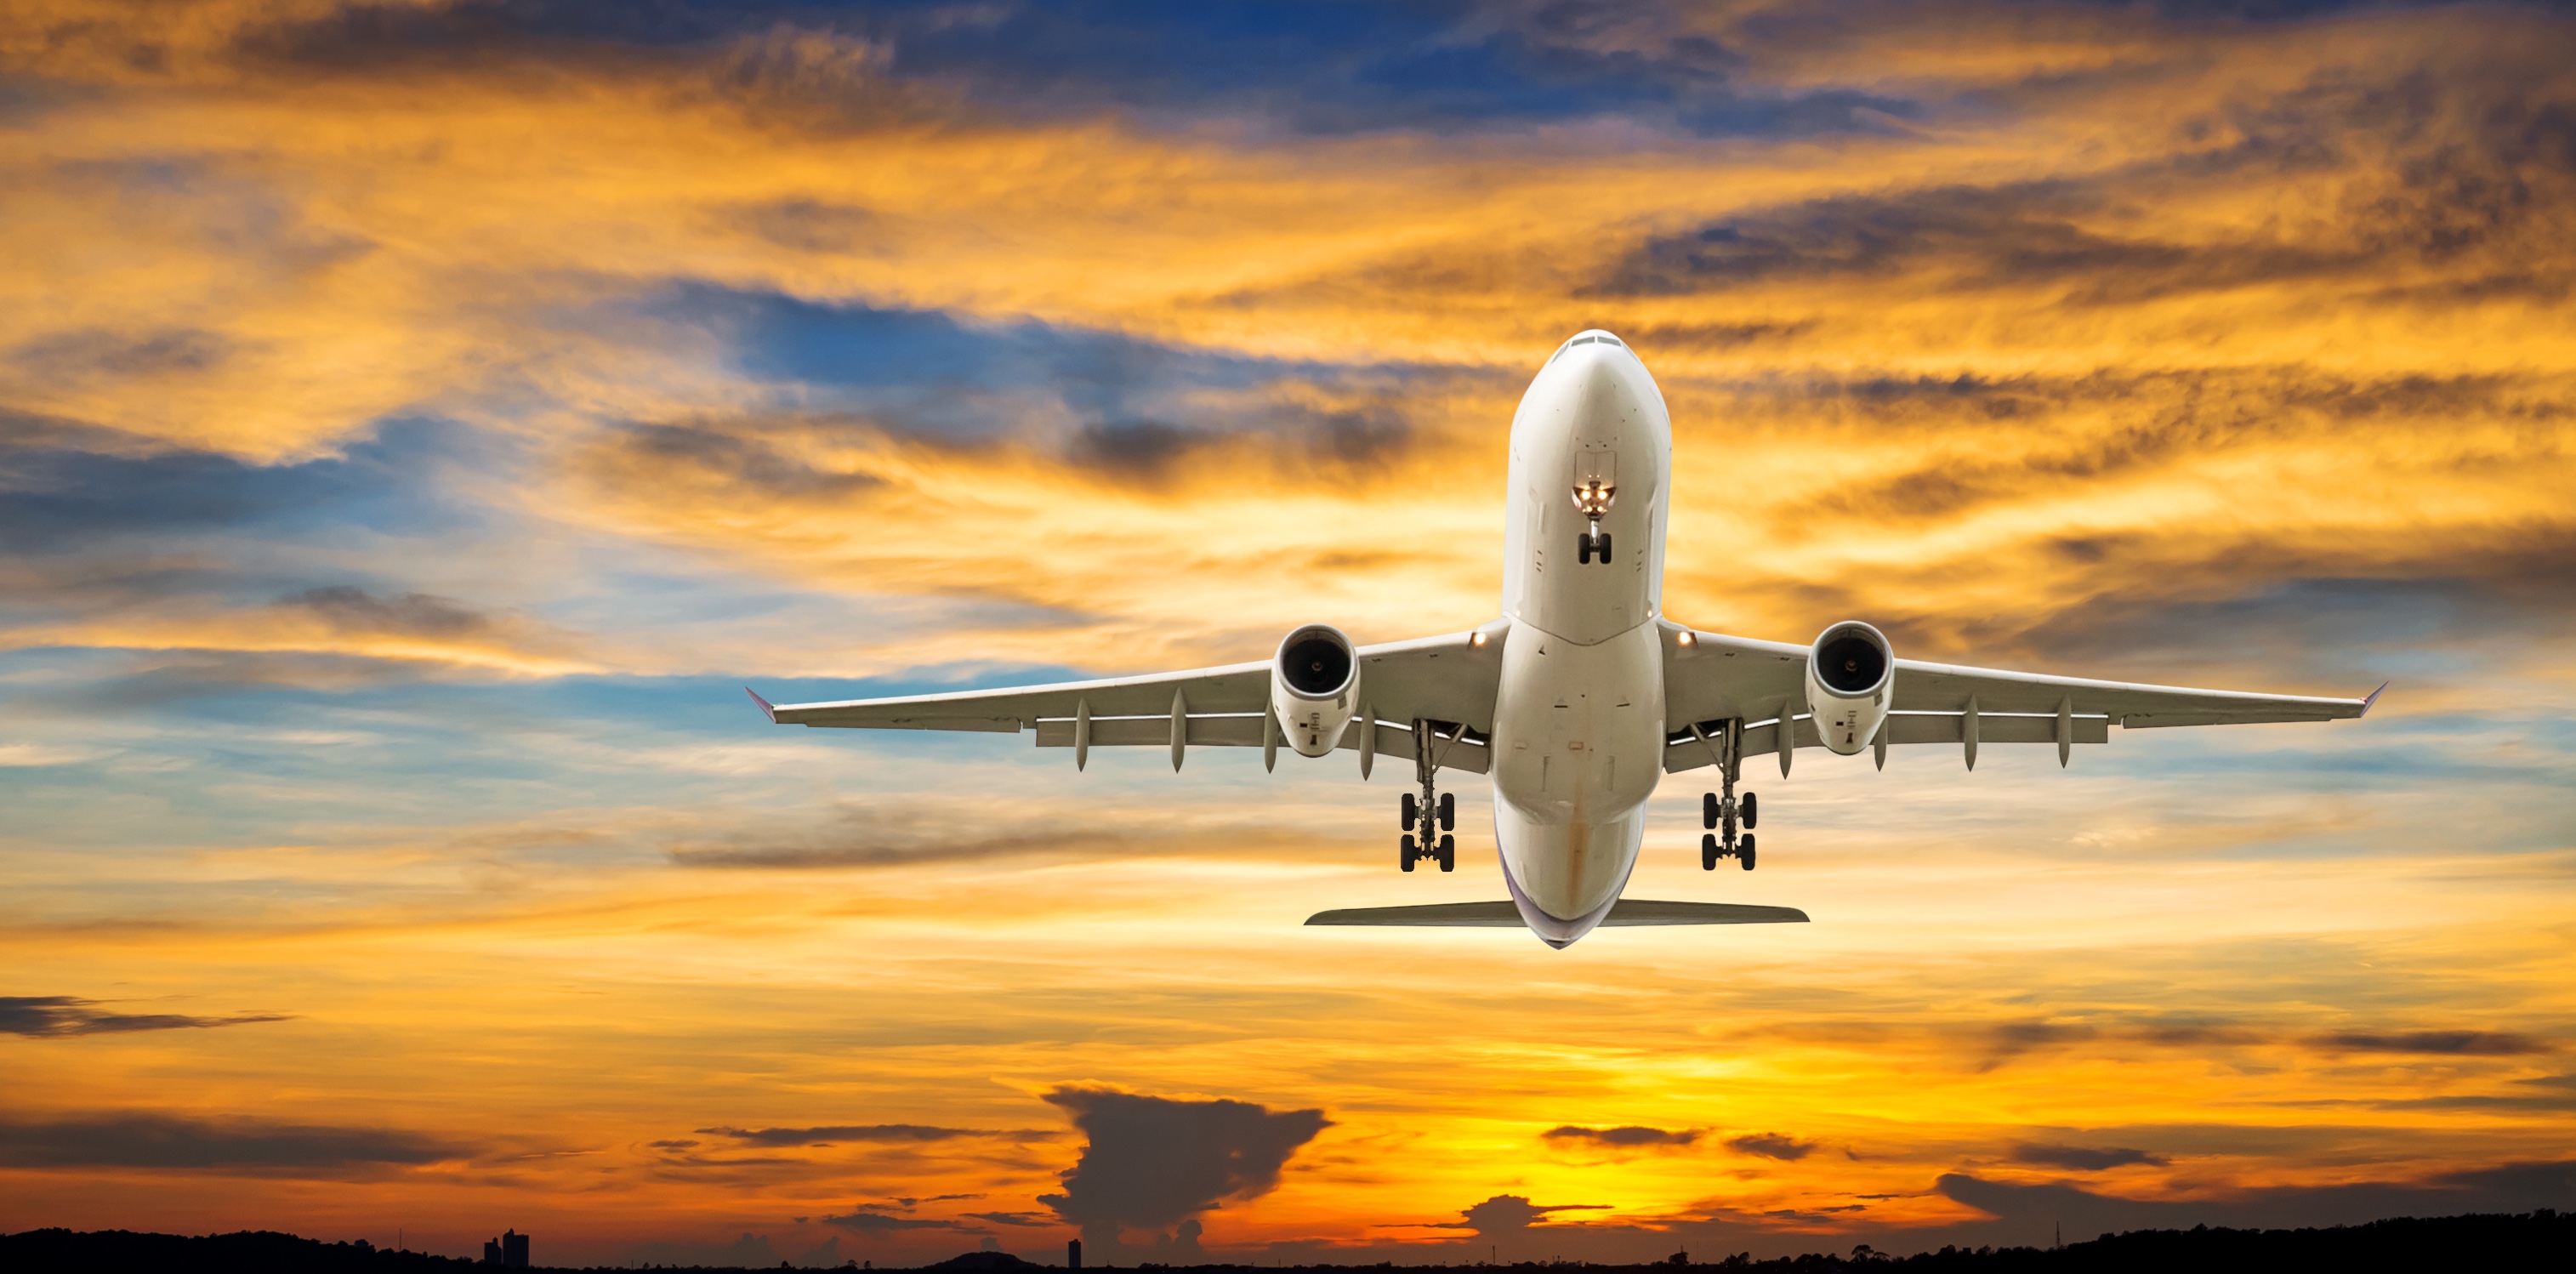 Etsi halvat lennot: Solomon Airlines